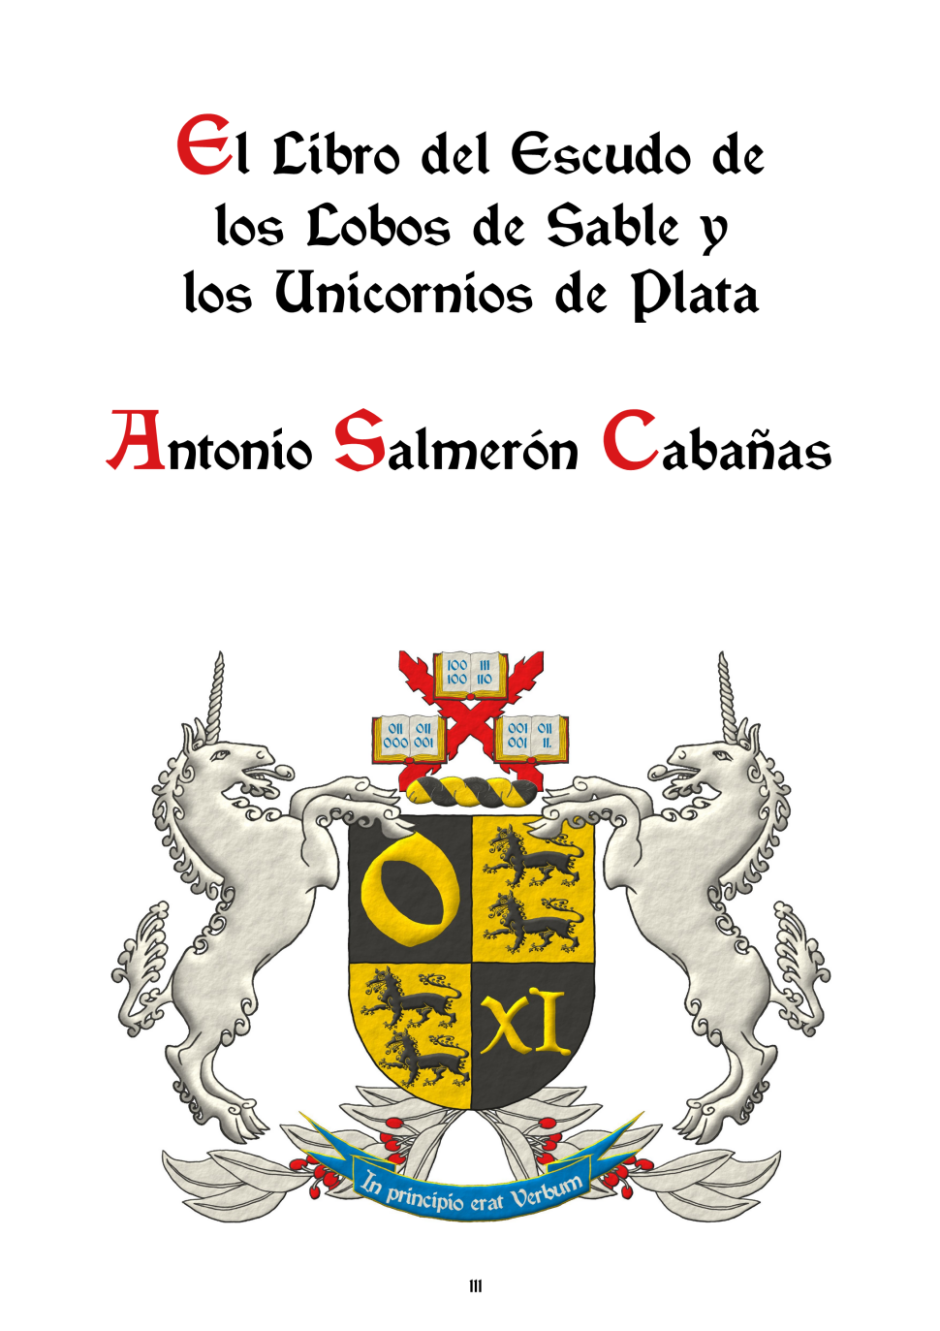 El libro del escudo de los Lobos de Sable y los Unicornios de Plata, Ediciones aContracorriente